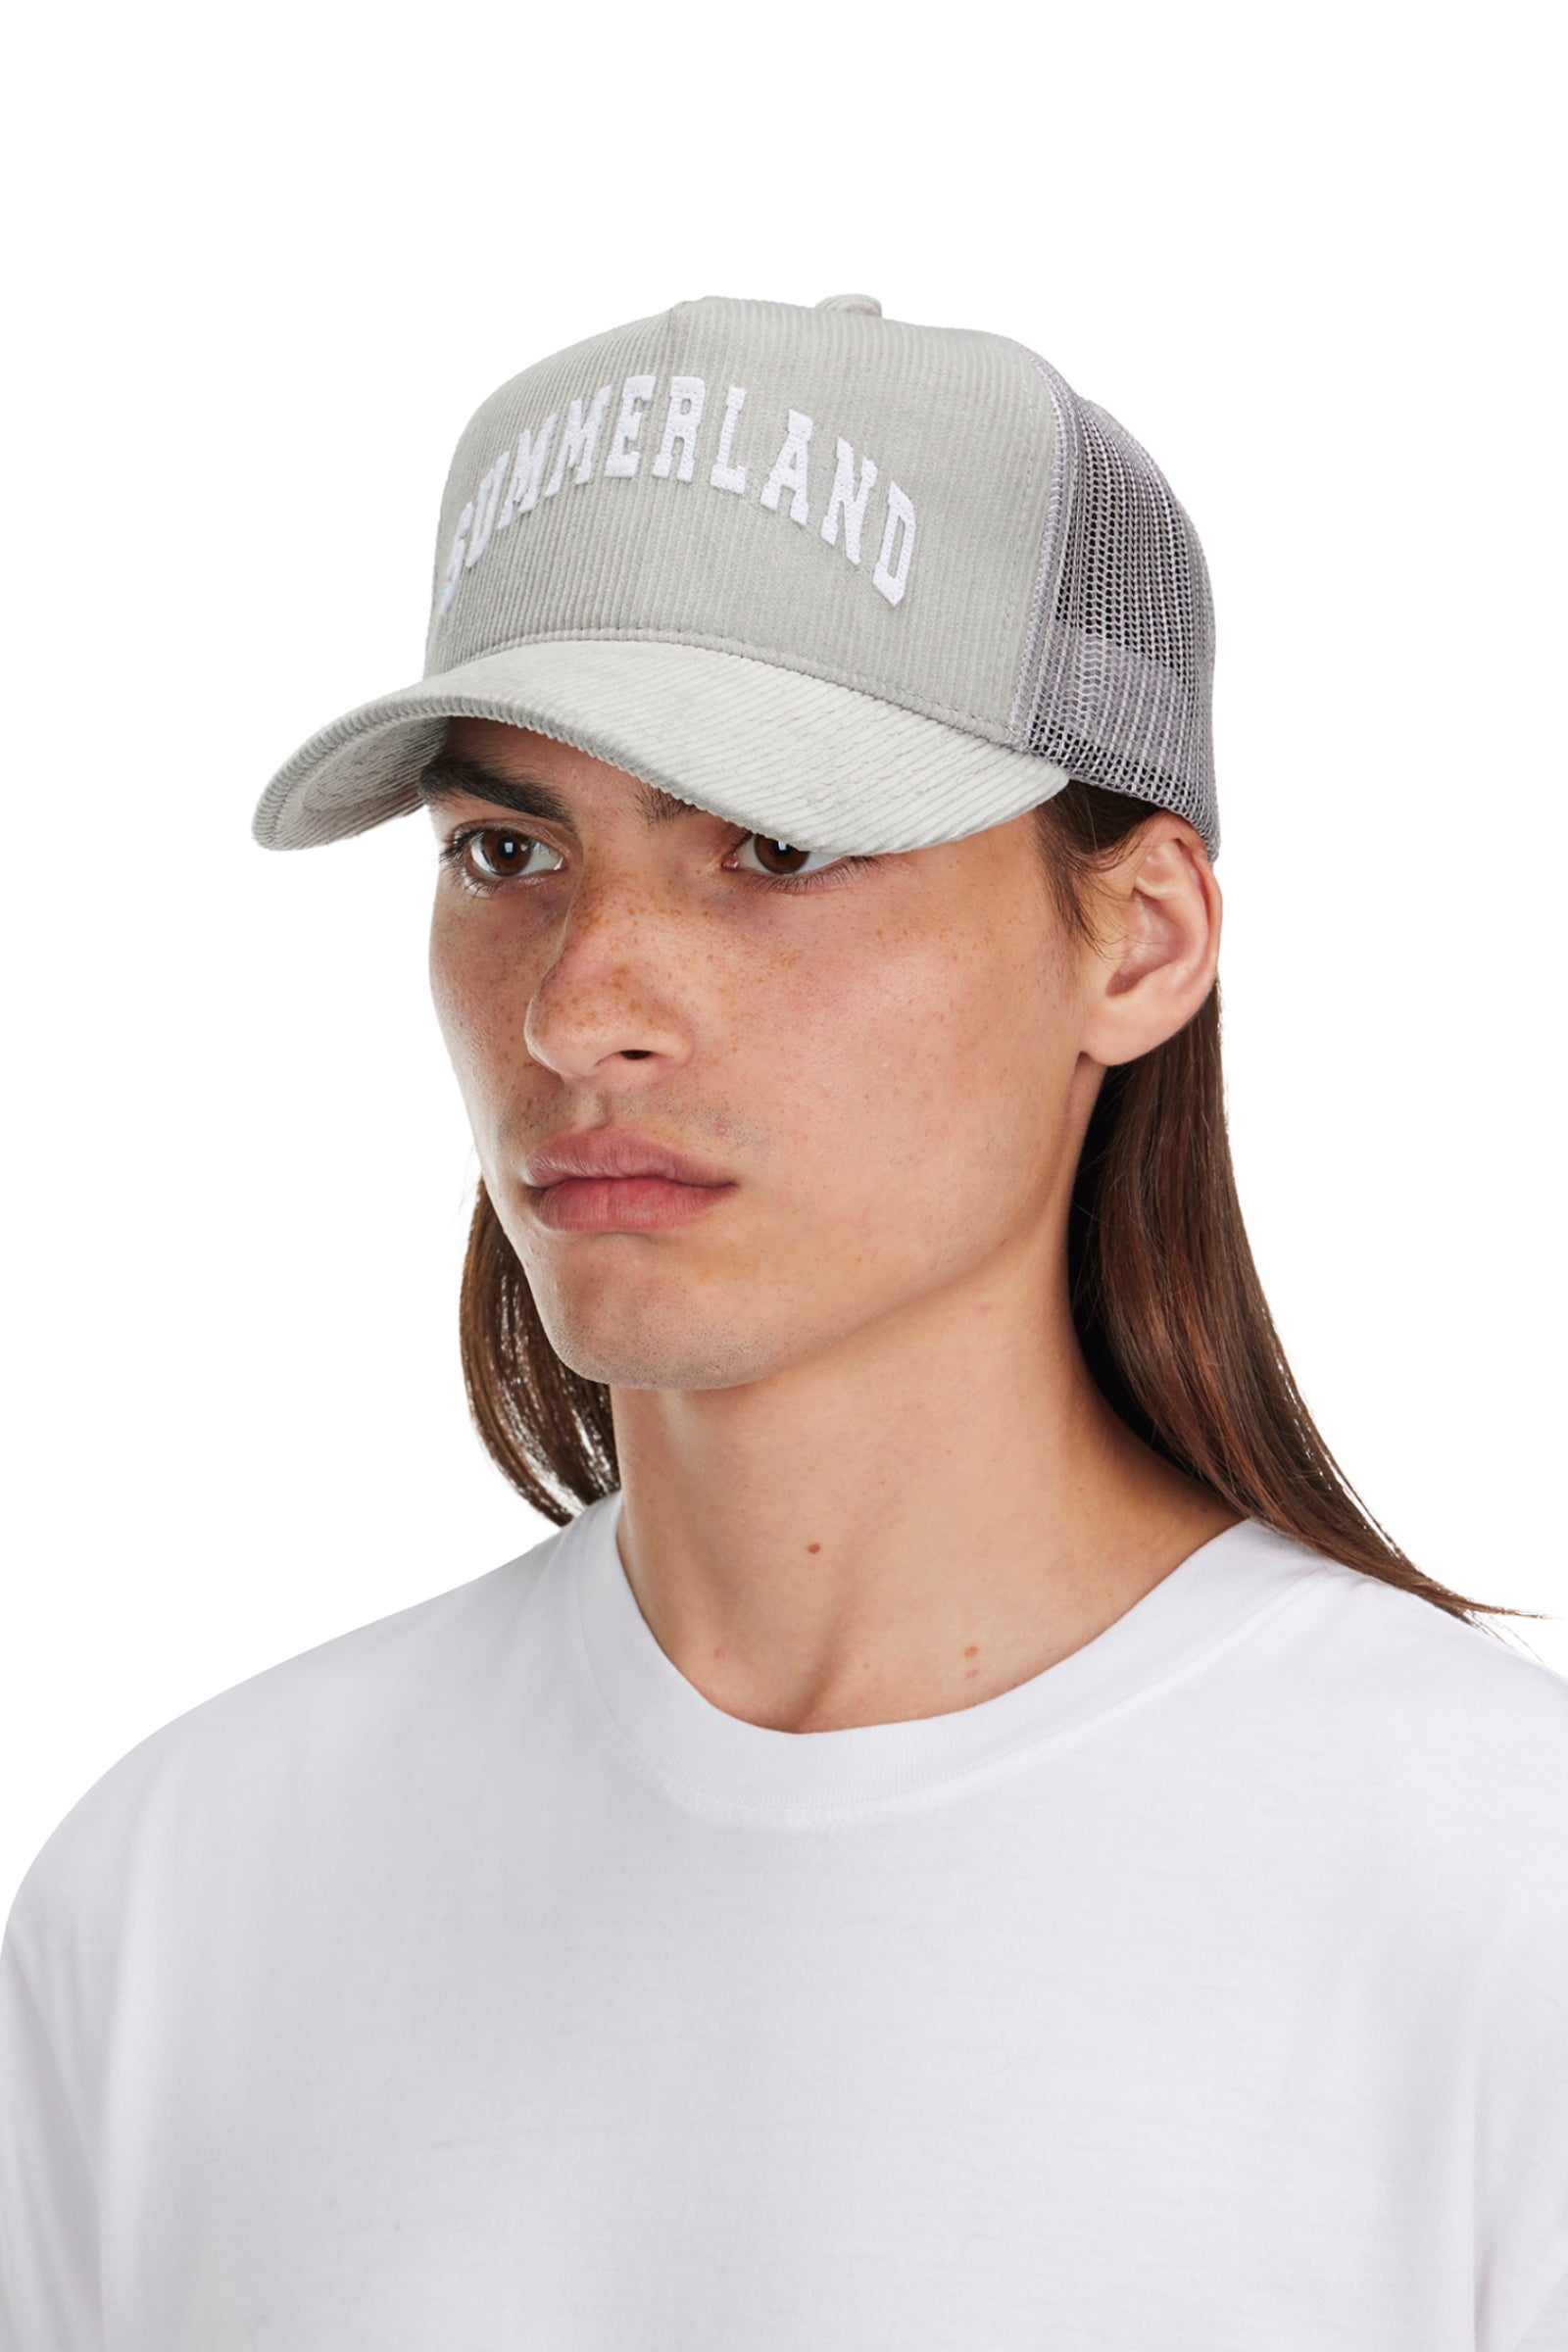 Summerland Corduroy Trucker Hat